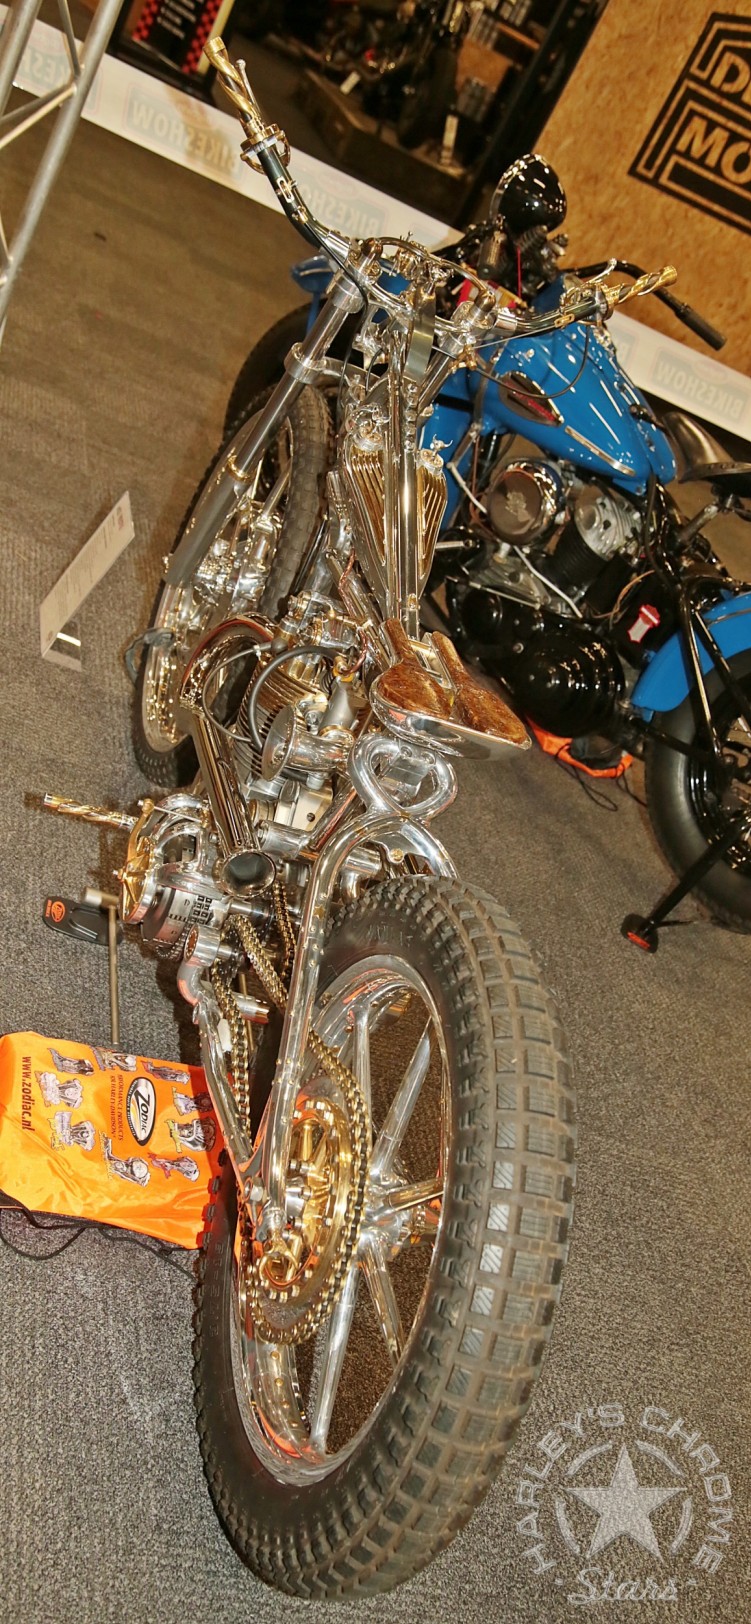 114 Big Twin Bikeshow Expo 22 Houten wystawa motocykli custom